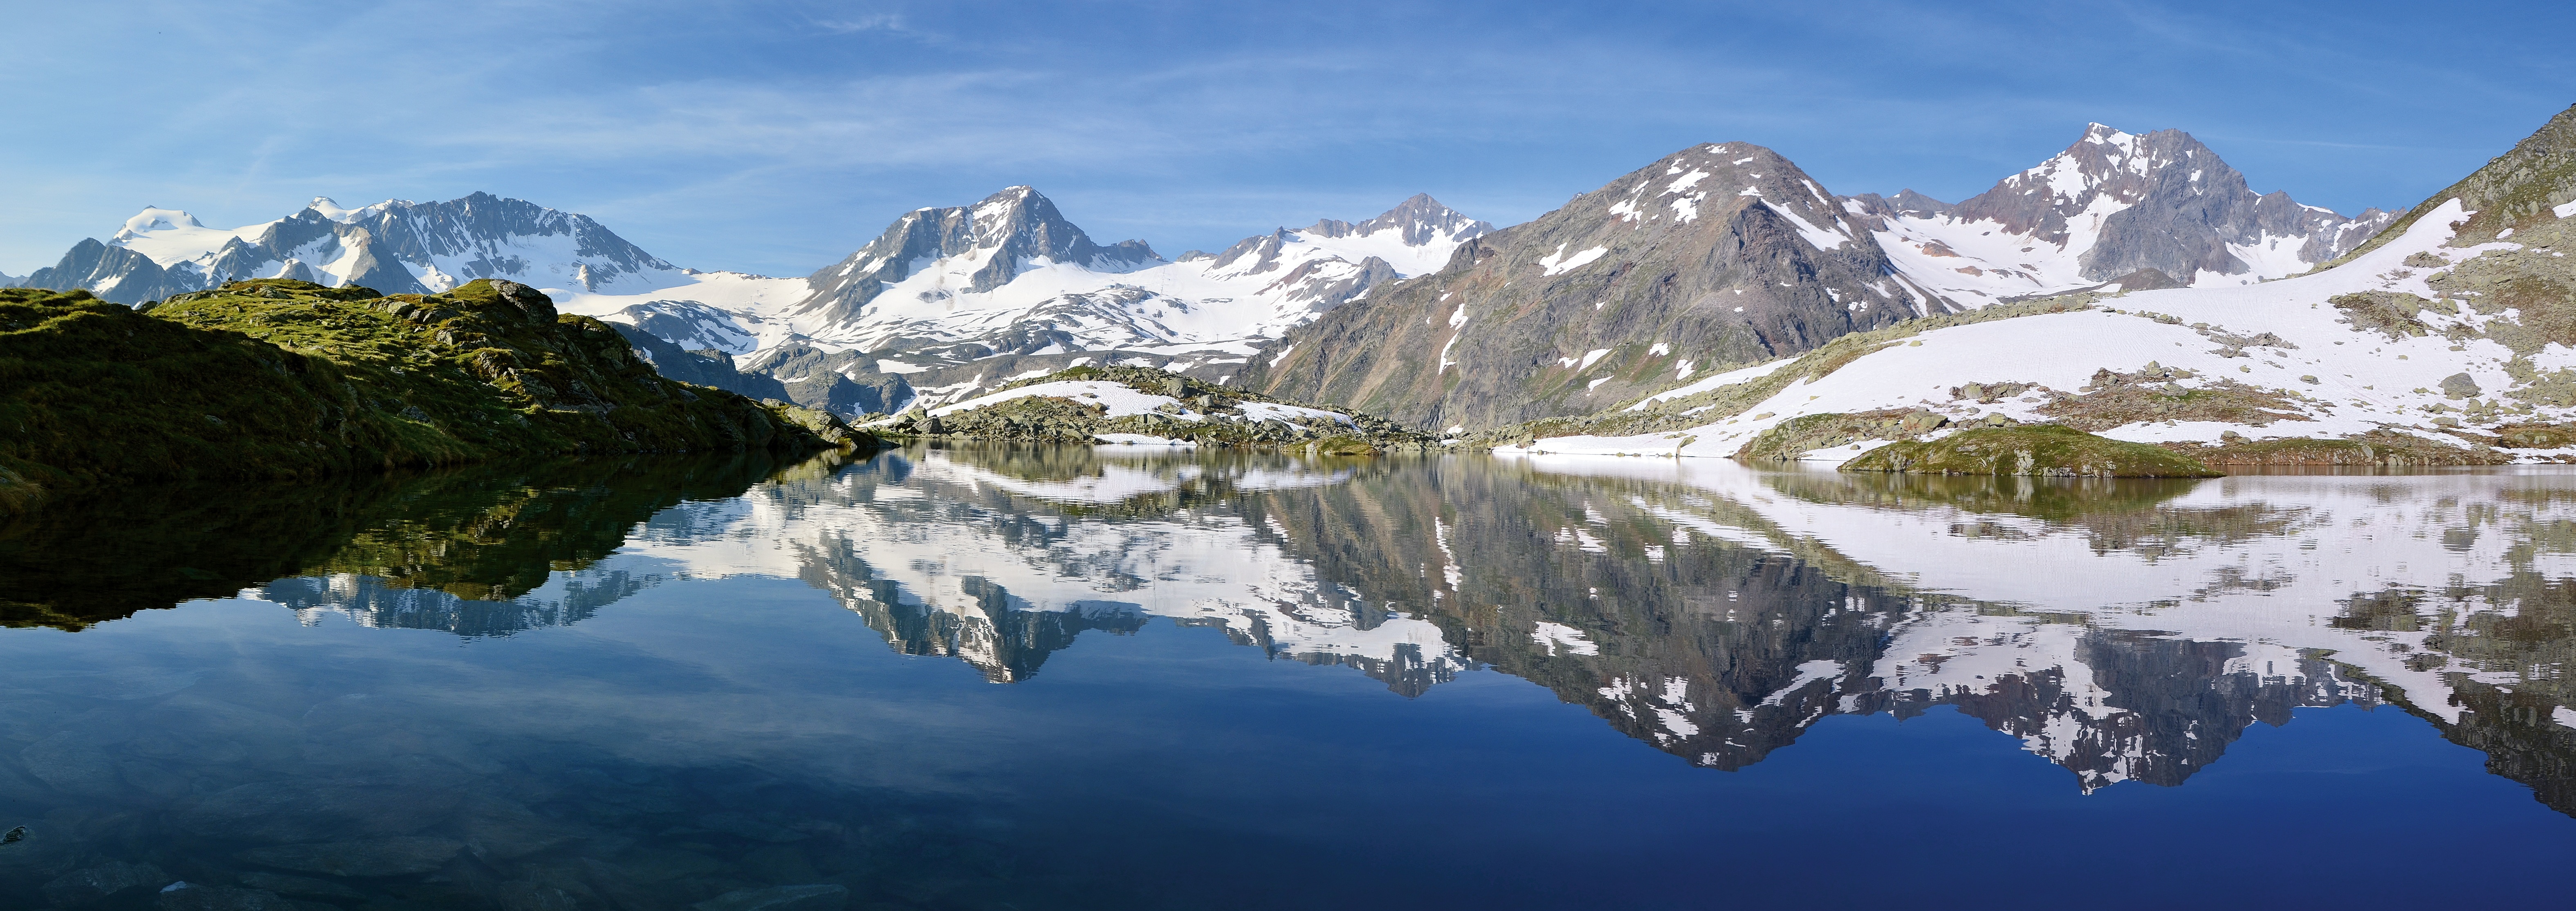 Bergsee, Alpine, Austria, Mountains, mountain, reflection